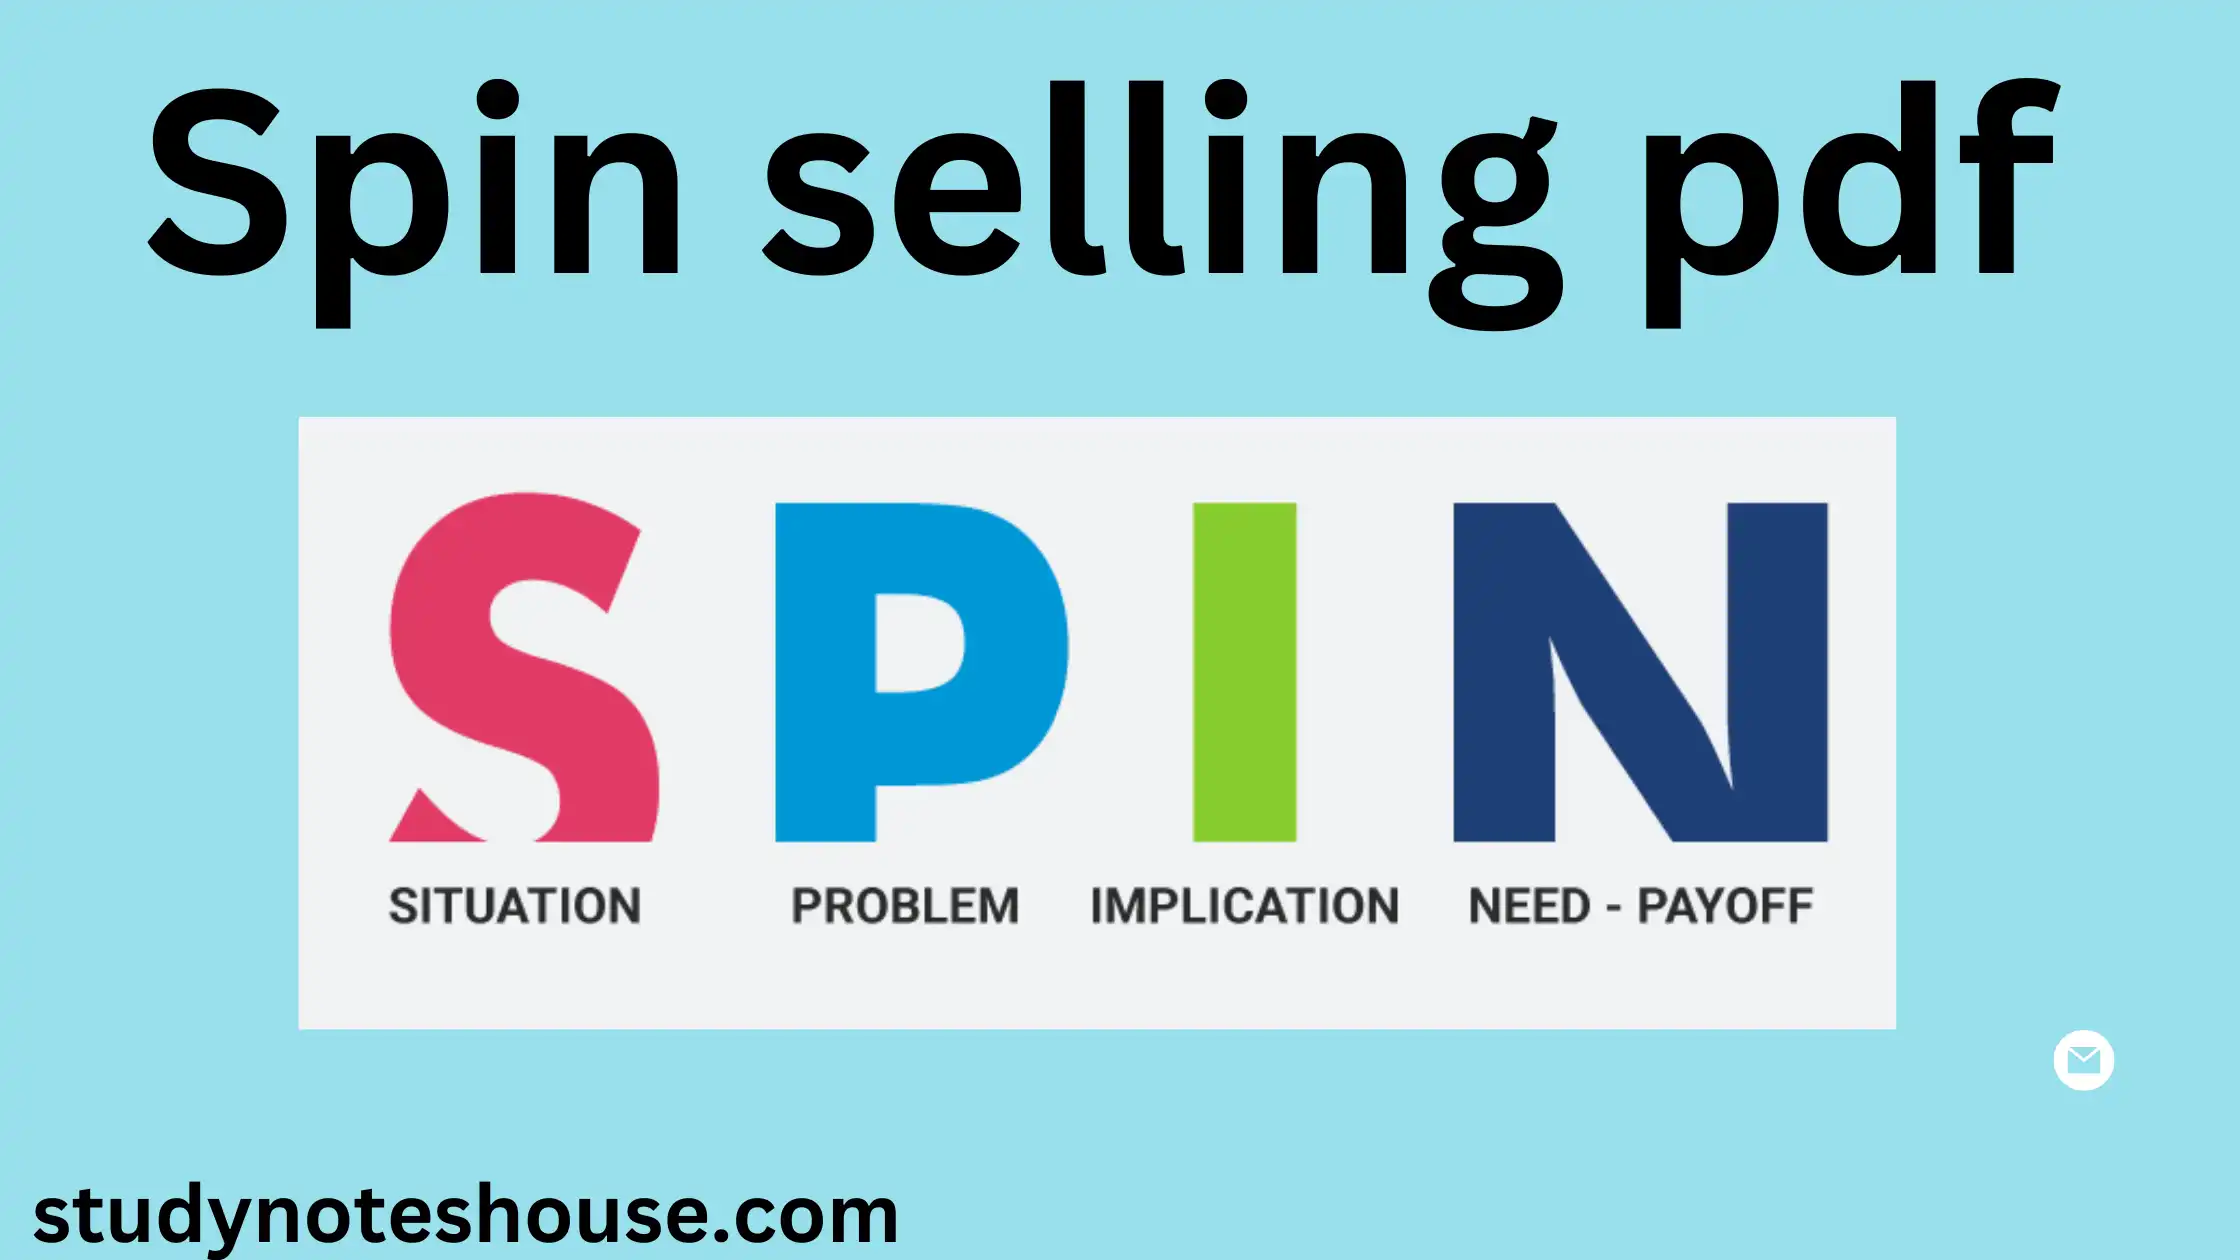 Spin selling pdf free Download